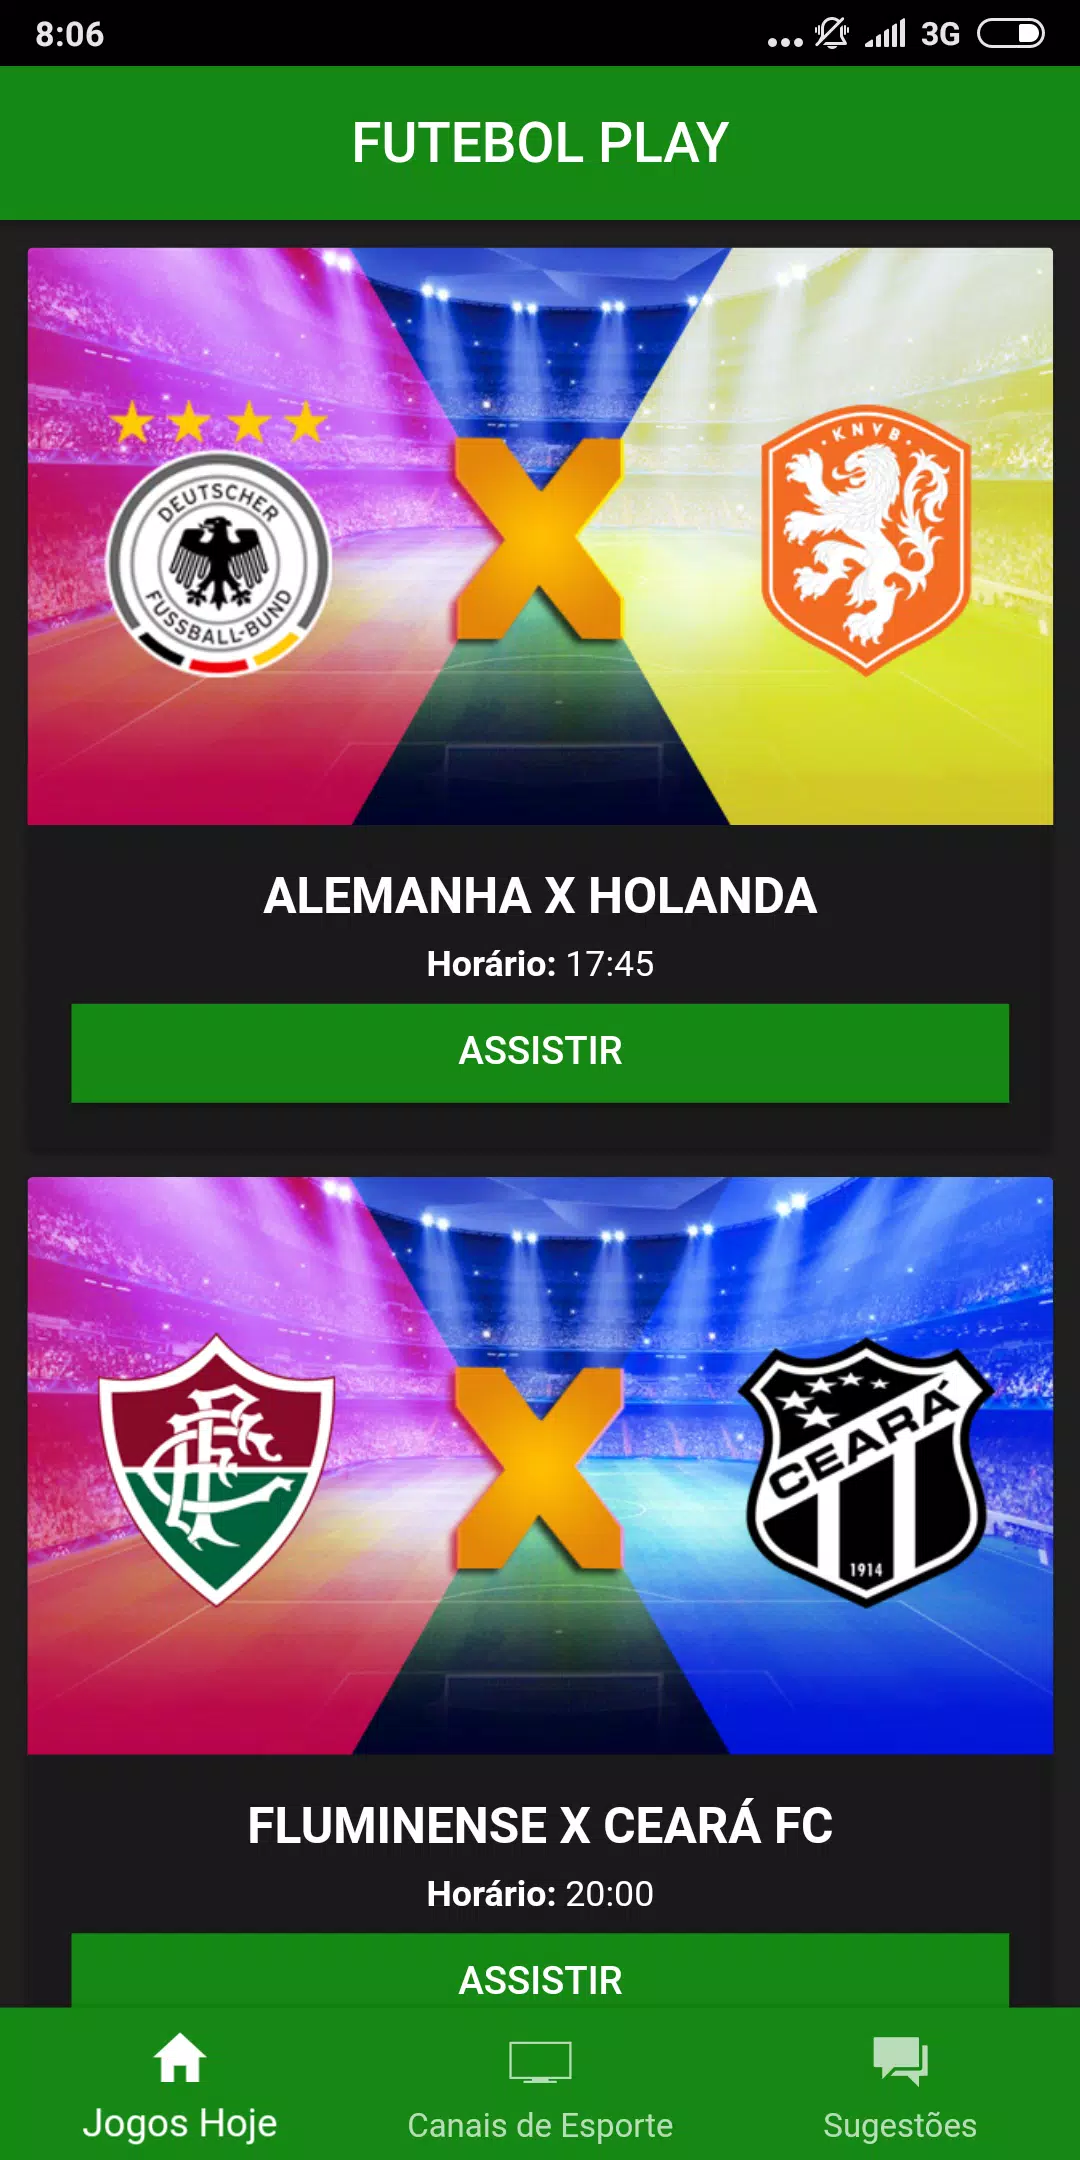 Assistir Futebol Ao Vivo Online - Futeleiros APK for Android Download